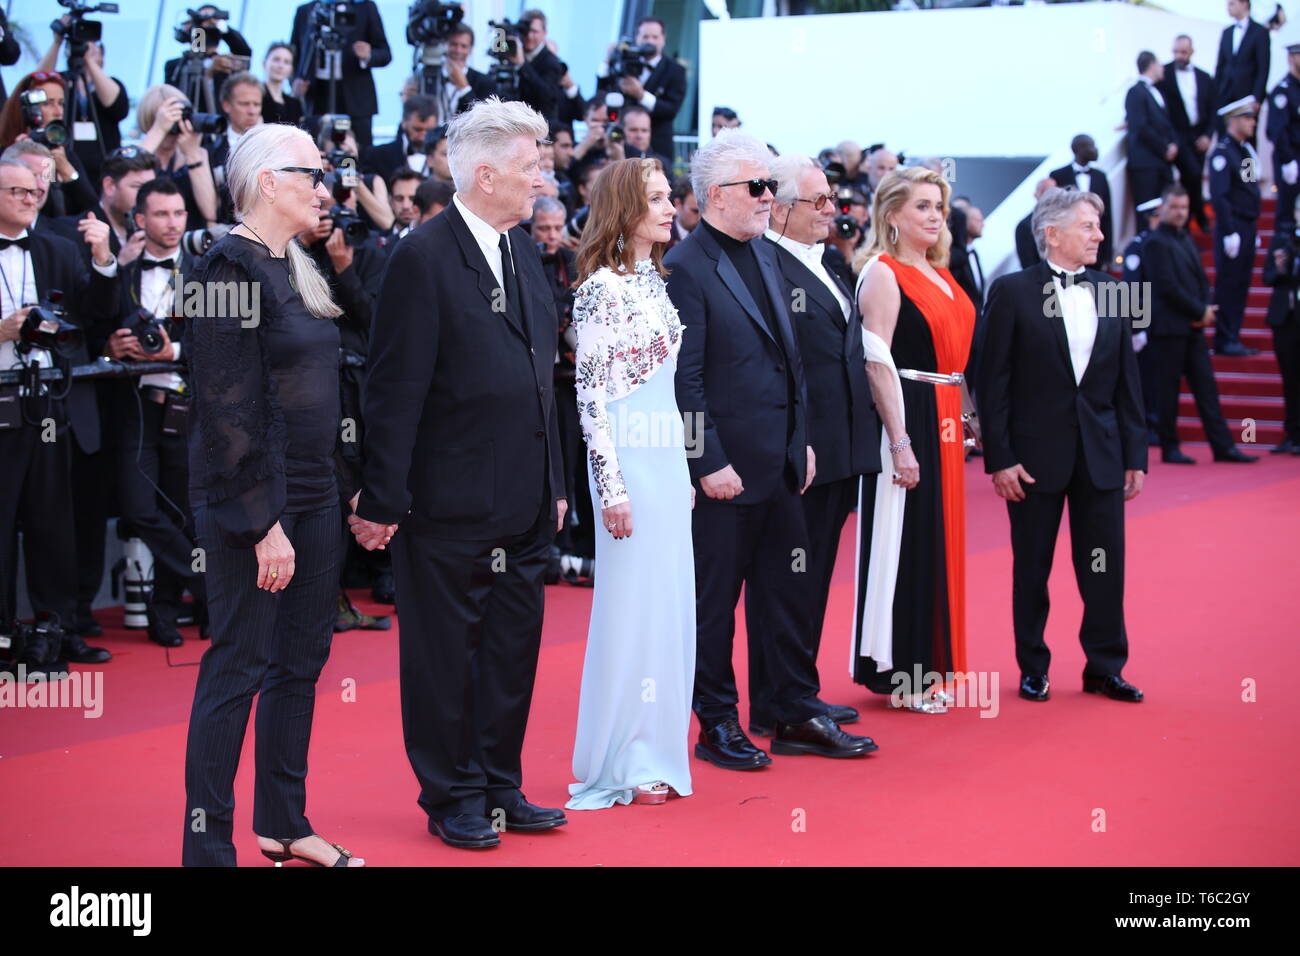 CANNES, Francia - 23 Maggio 2017: Ex Presidenti della Giuria del Festival del Cinema di Cannes il settantesimo anniversario tappeto rosso (Foto: Mickael Chavet) Foto Stock